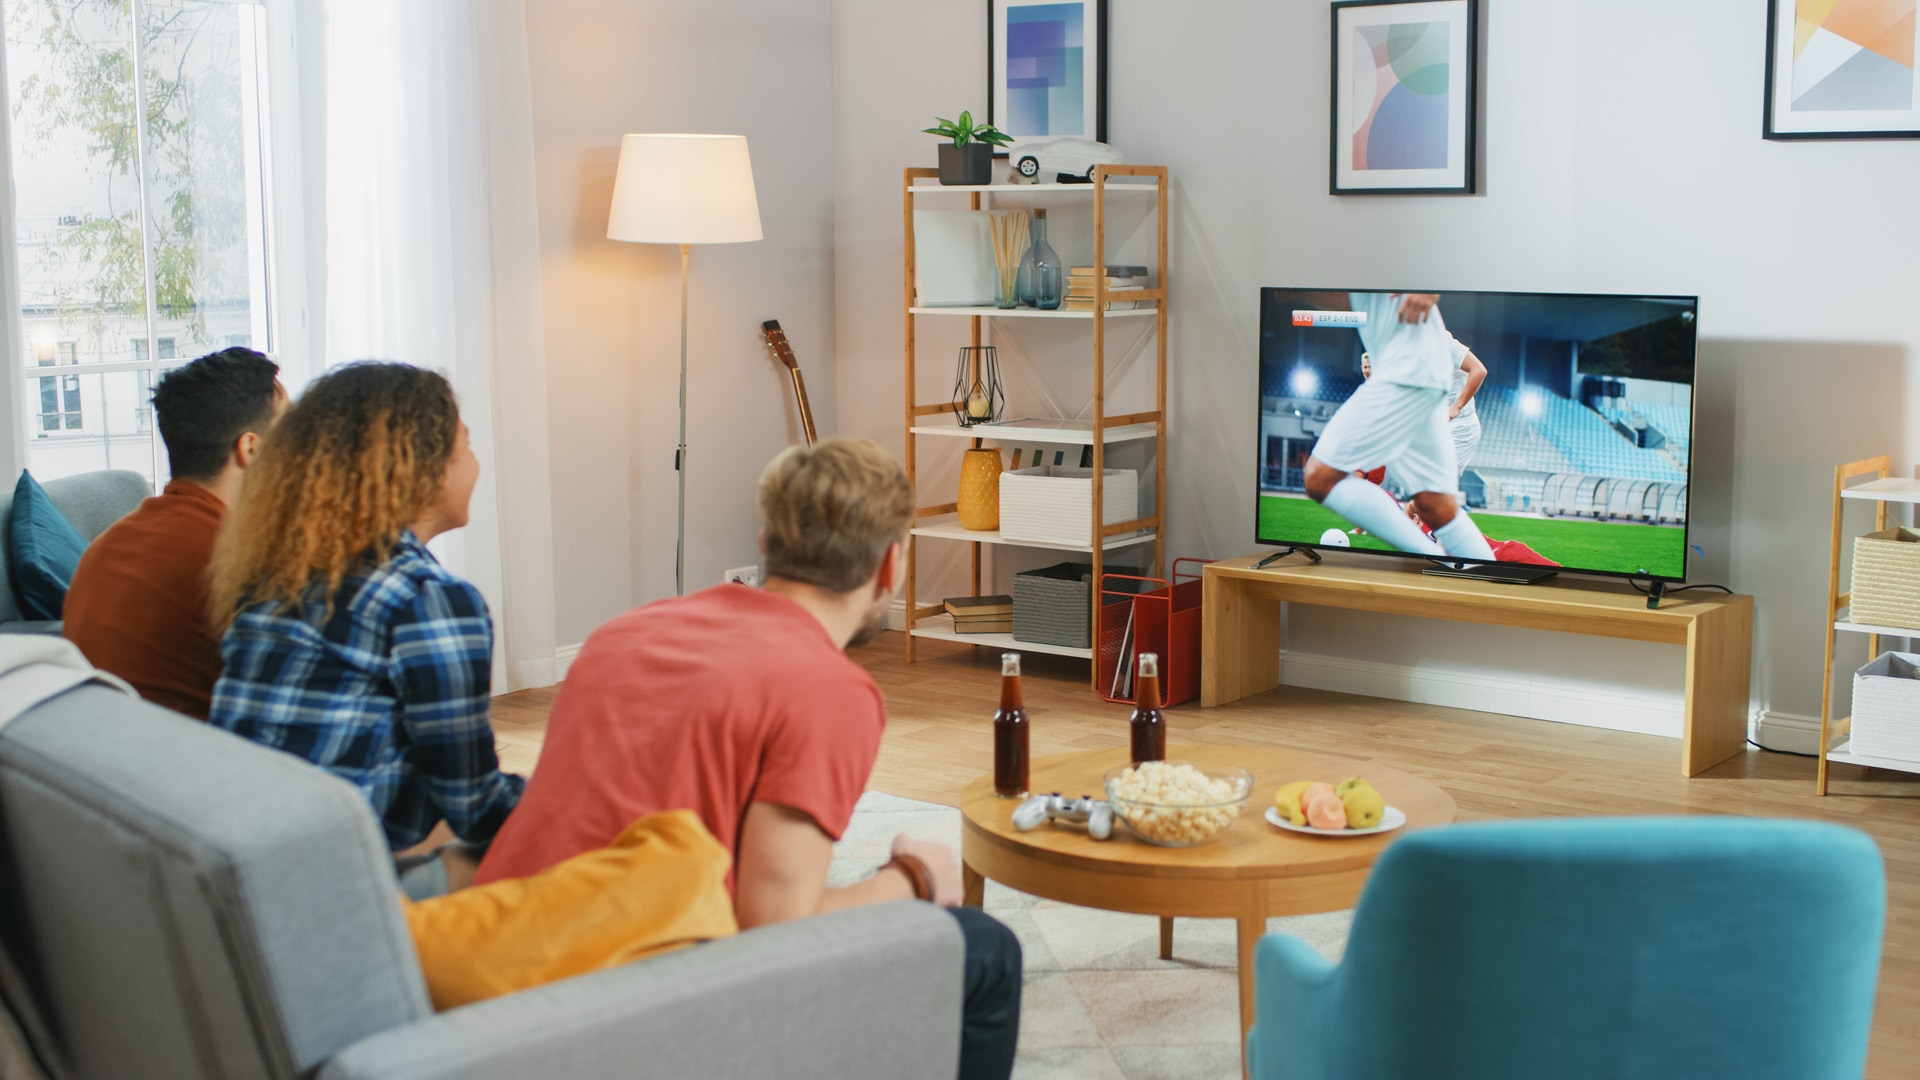 Három sportrajongó ül egy kanapén a nappaliban, fontos focimeccset néznek: izgulnak és szurkolnak a csapatuknak.